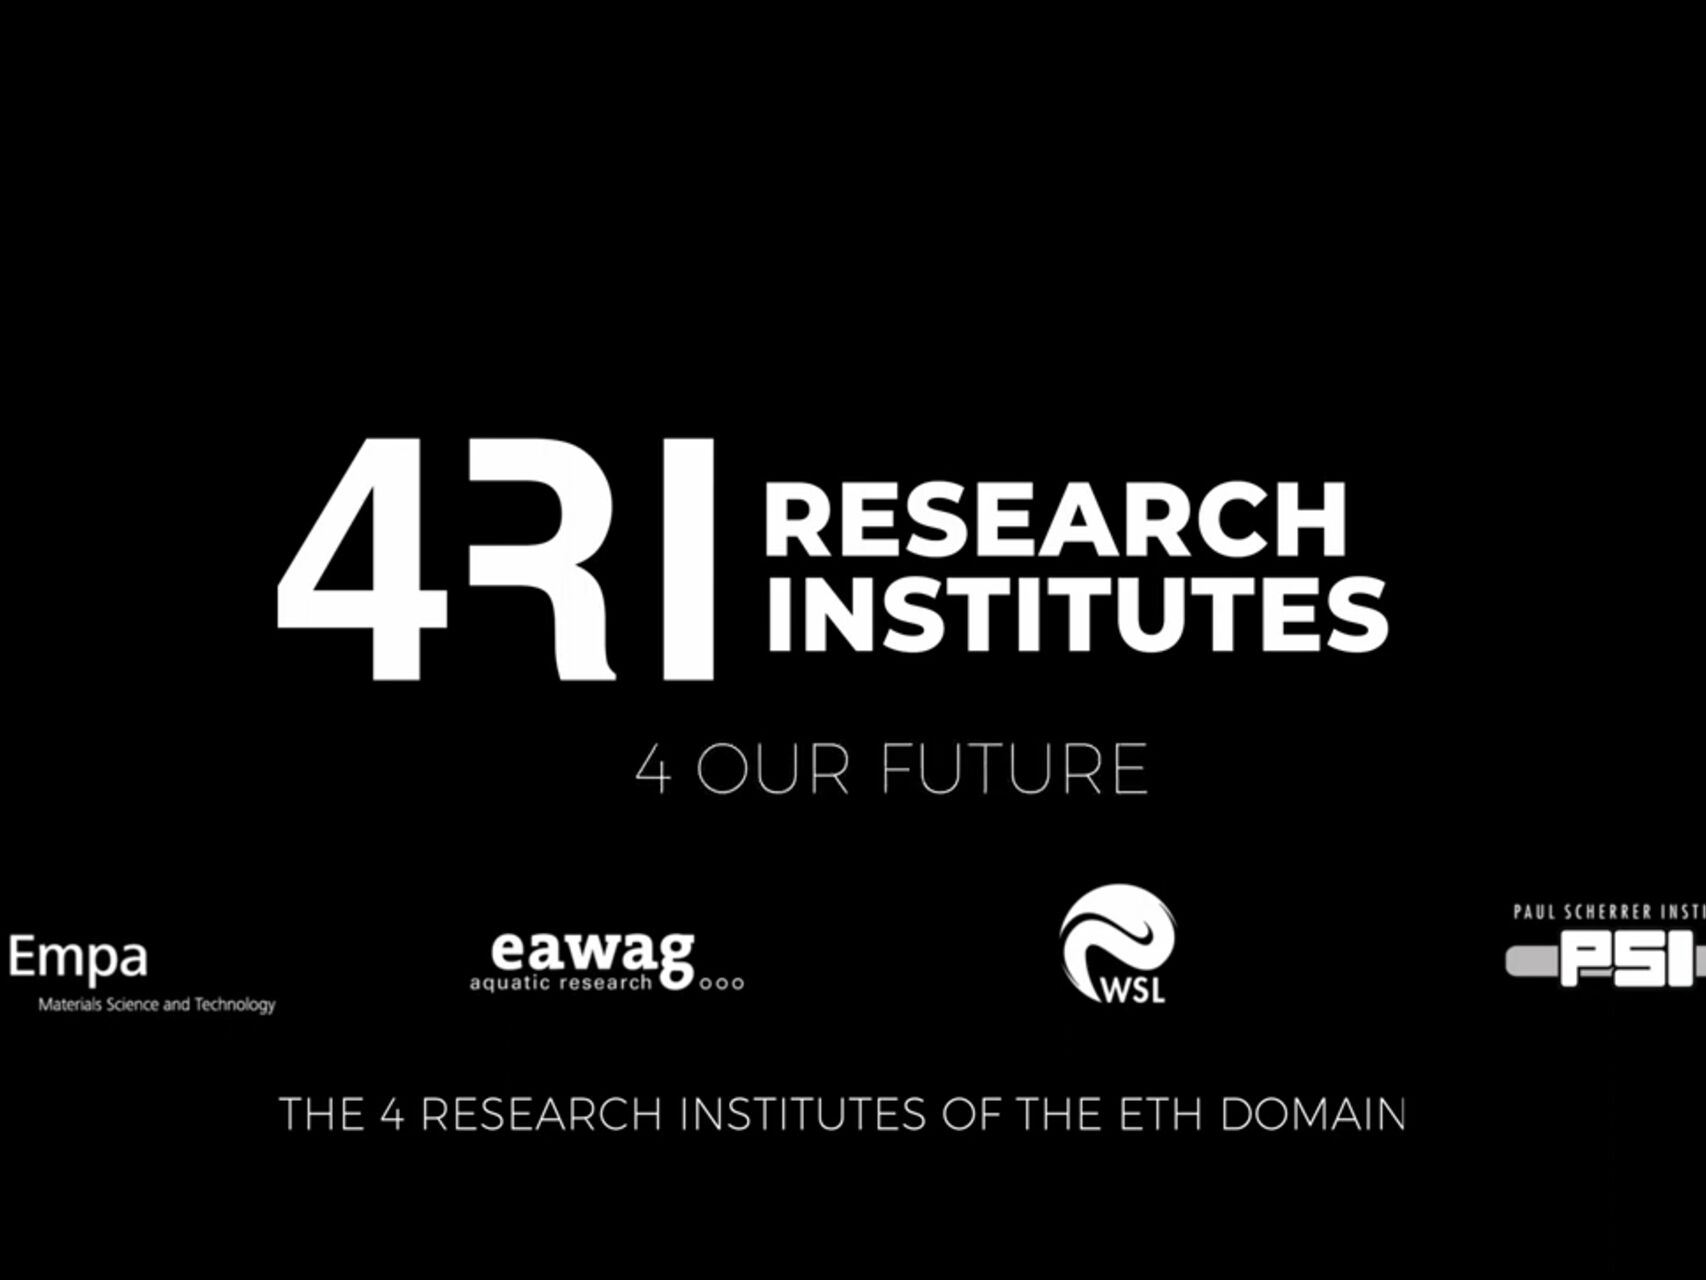 İsviçre araştırma merkezleri: EMPA, EAWAG, WSL ve PSI